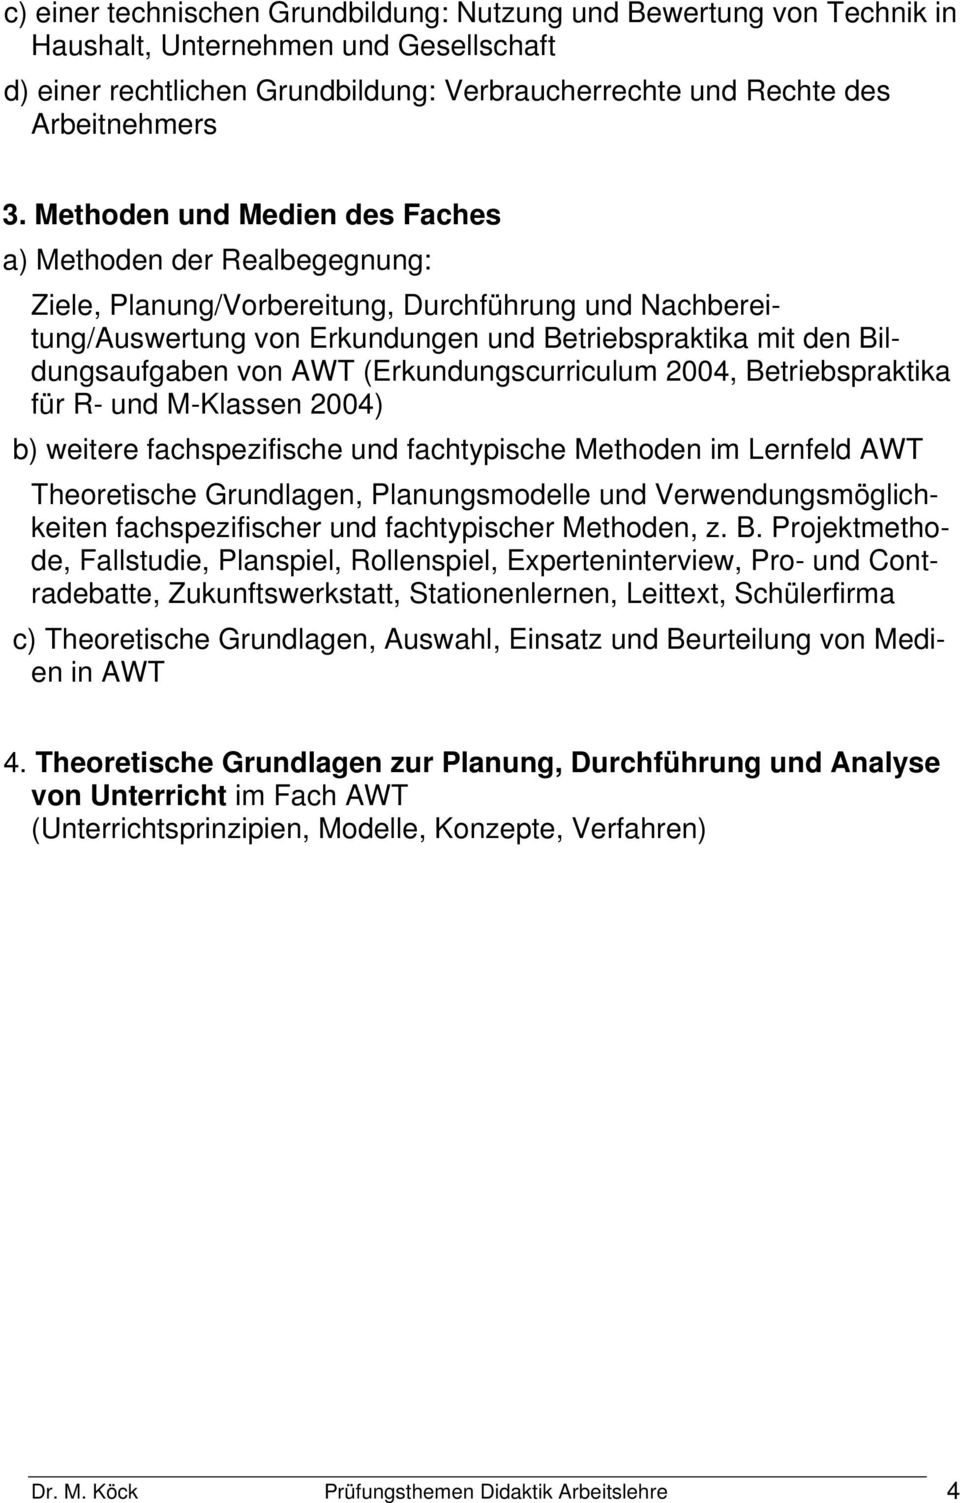 AWT (Erkundungscurriculum 2004, Betriebspraktika für R- und M-Klassen 2004) b) weitere fachspezifische und fachtypische Methoden im Lernfeld AWT Theoretische Grundlagen, Planungsmodelle und